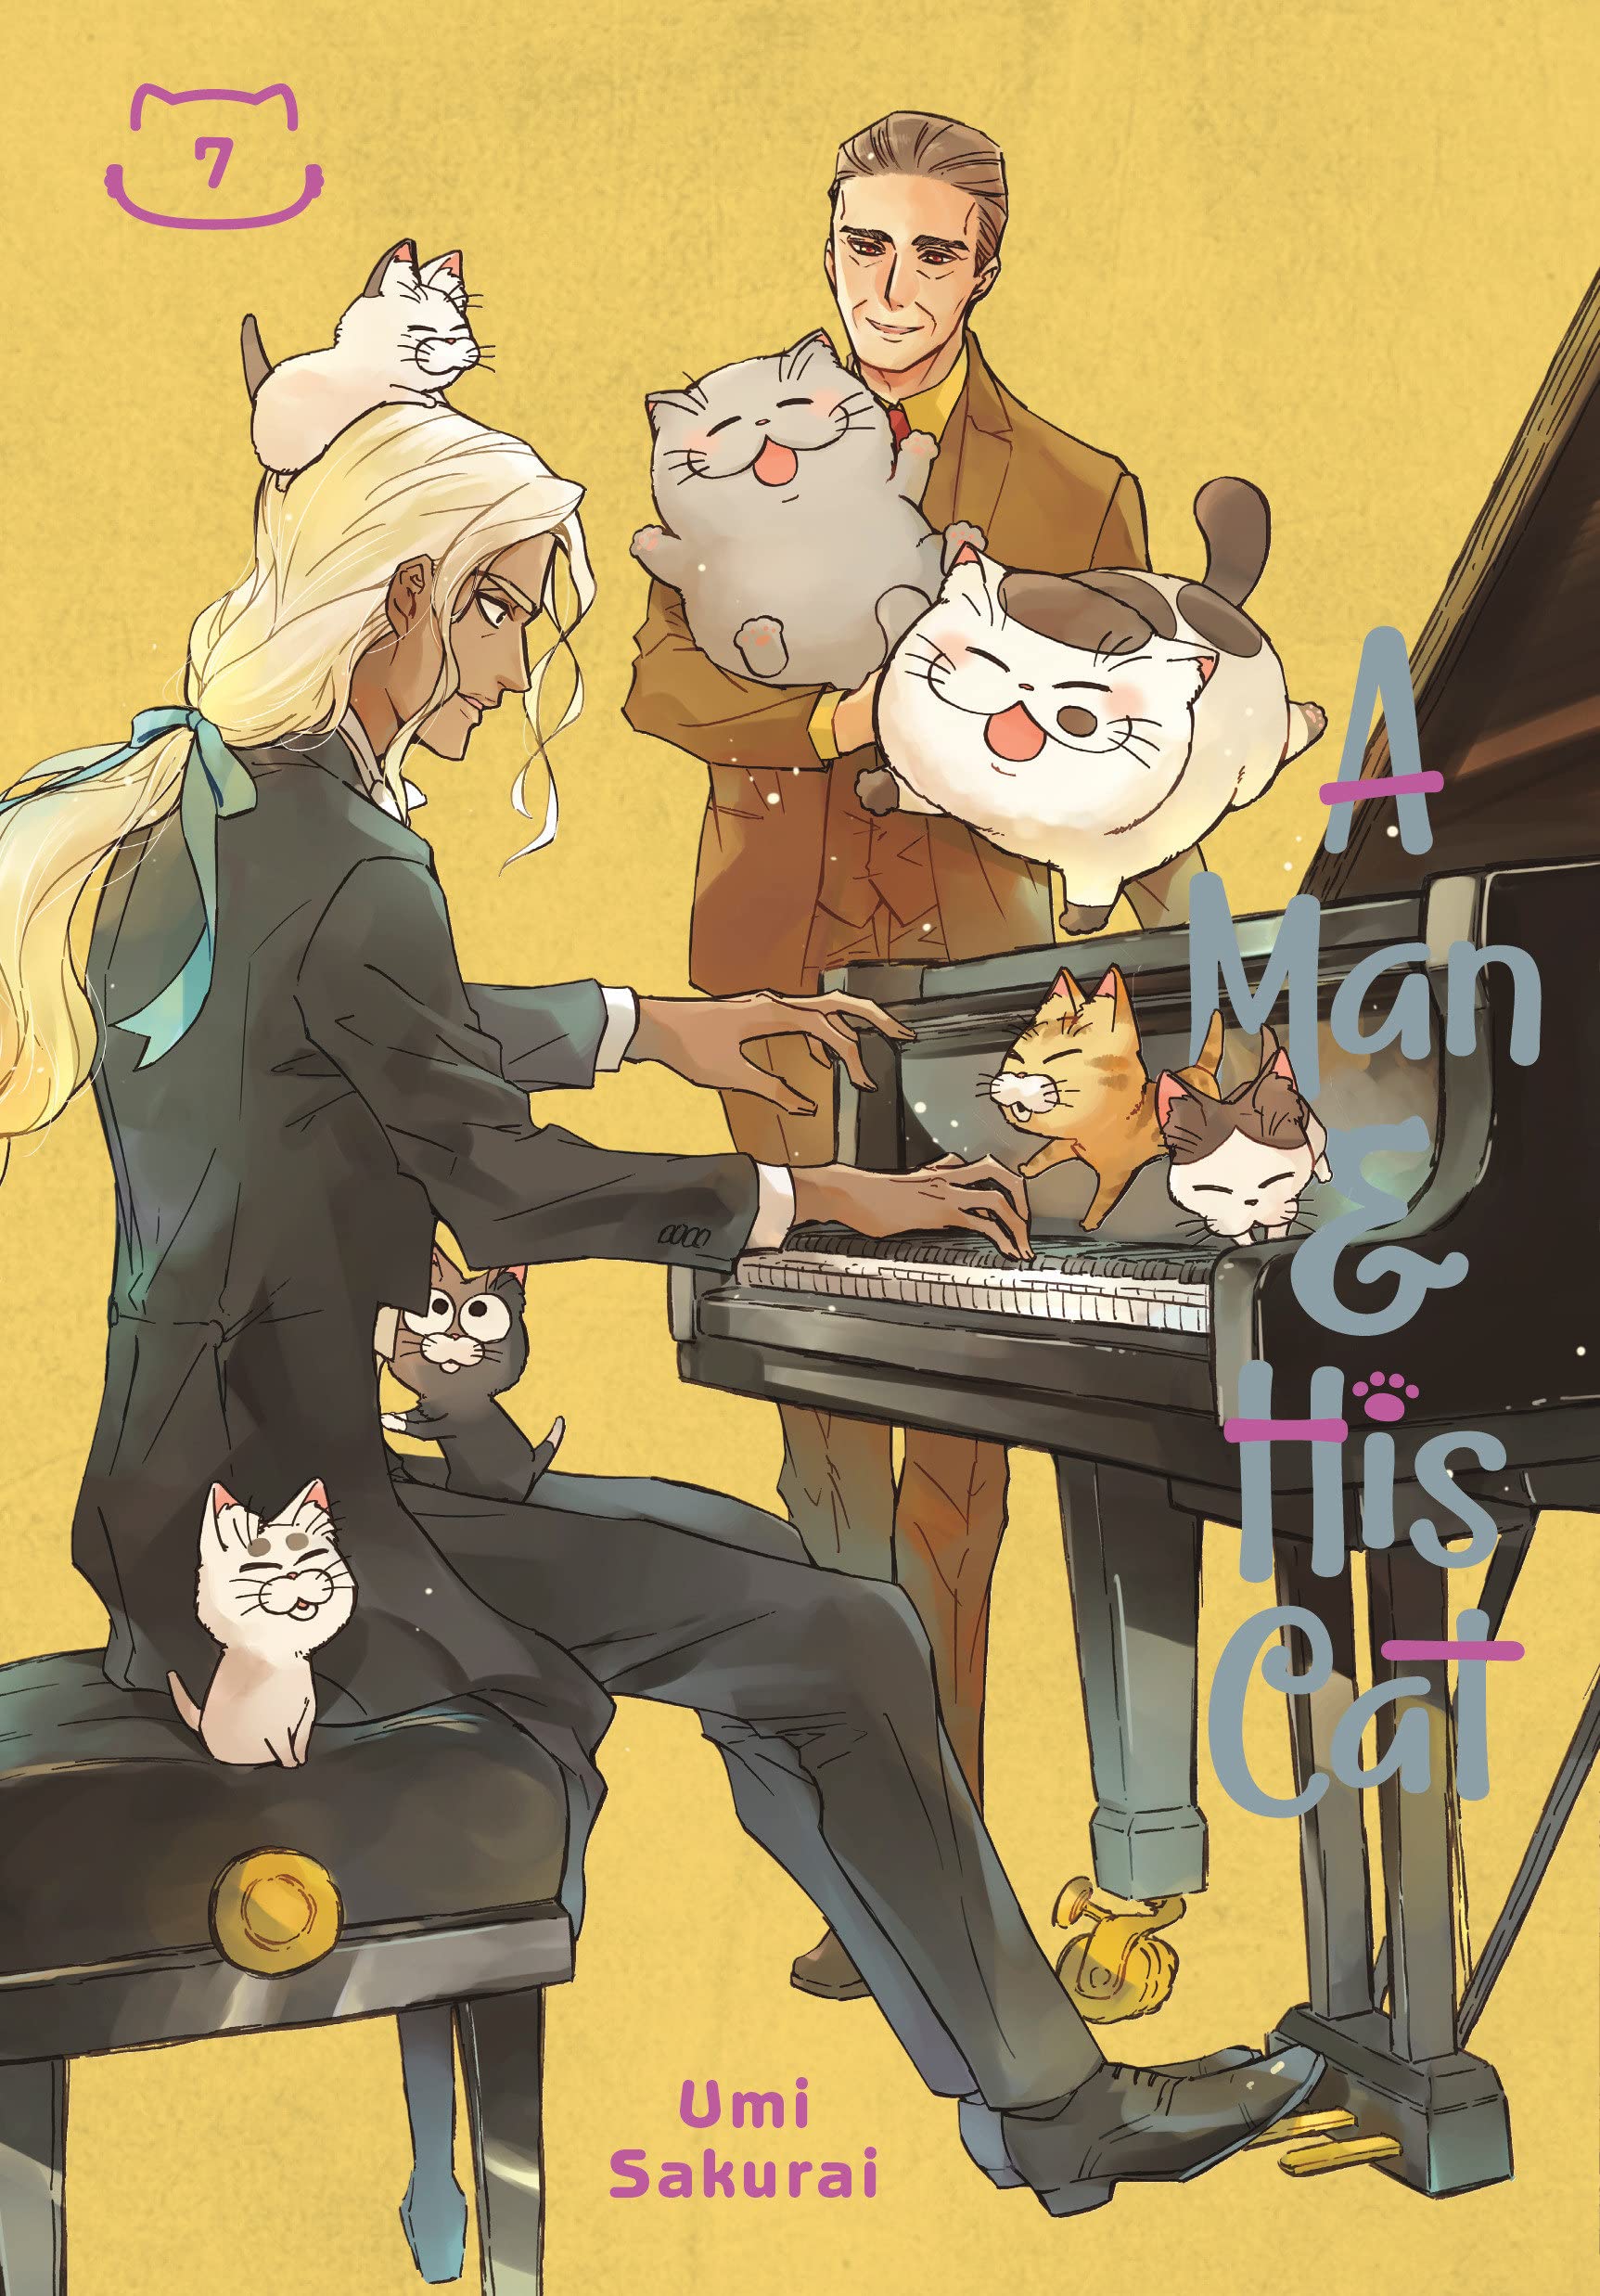 A Man and His Cat Vol. 07